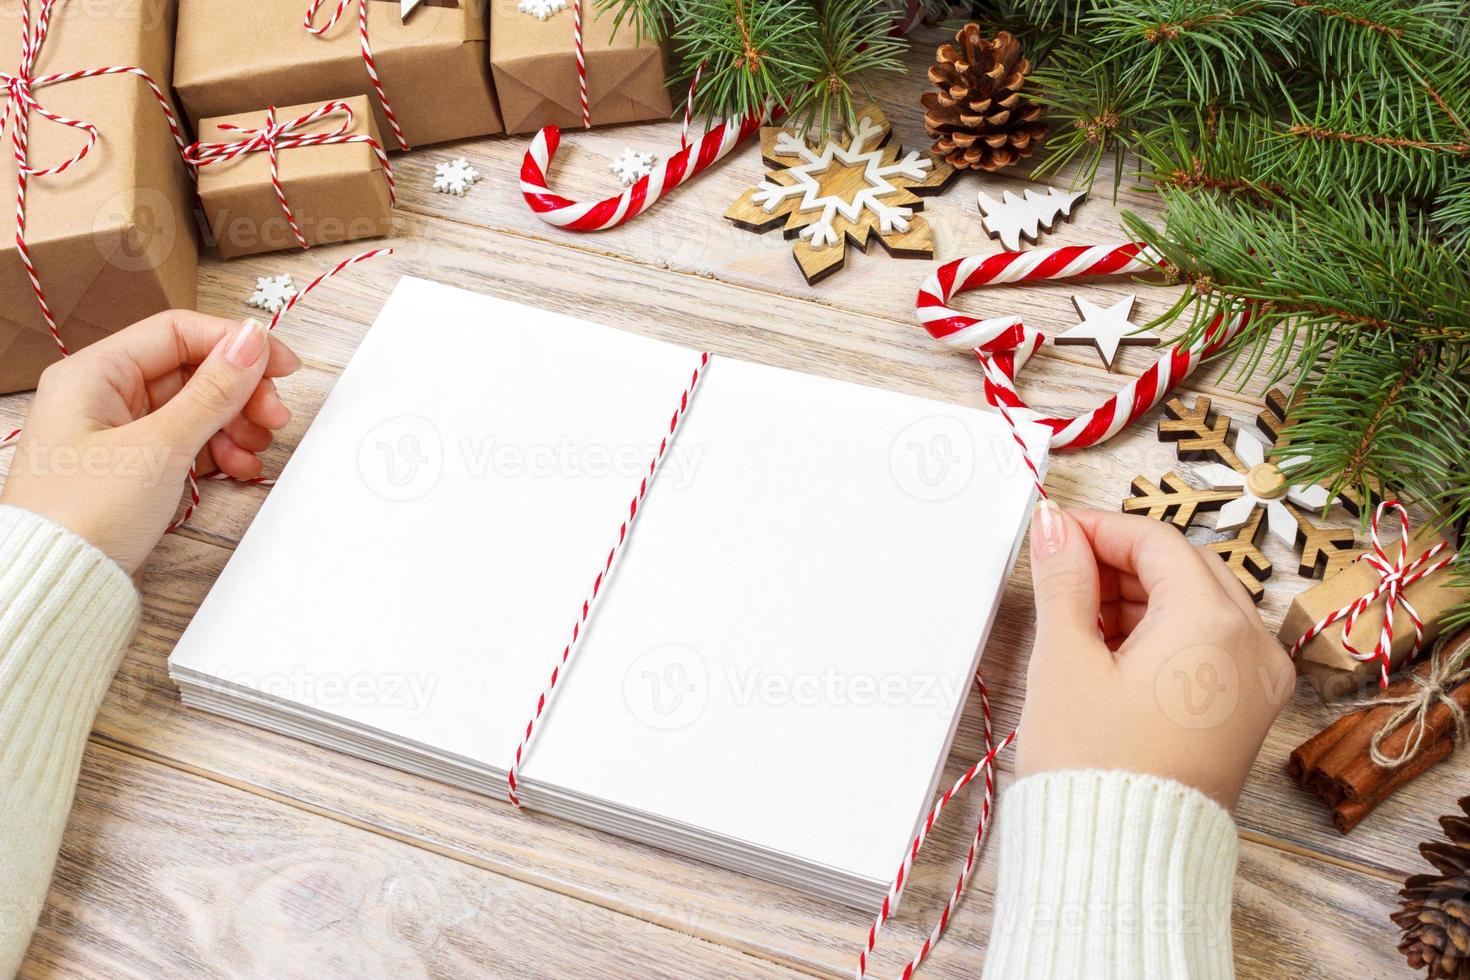 embrulho de cartas e caixa de presente, cartões para saudações de natal. envelopes com cartas, presentes, galhos de árvores de natal e decoração de natal, vista superior, copie o espaço foto